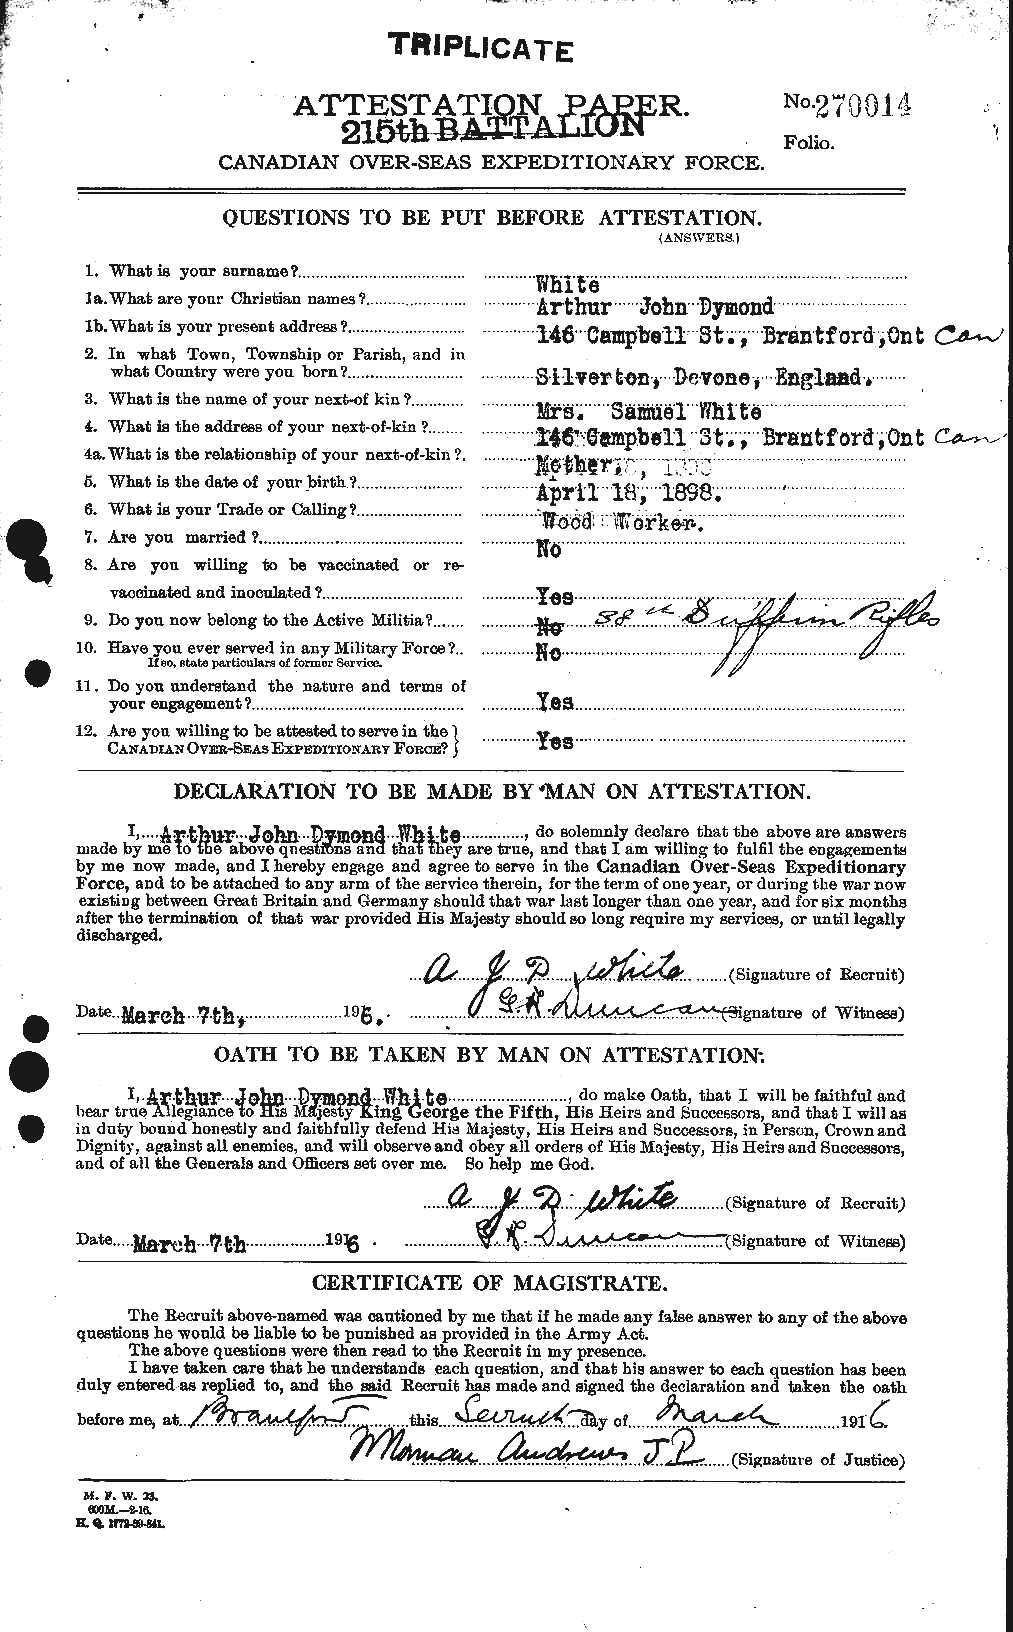 Dossiers du Personnel de la Première Guerre mondiale - CEC 669849a